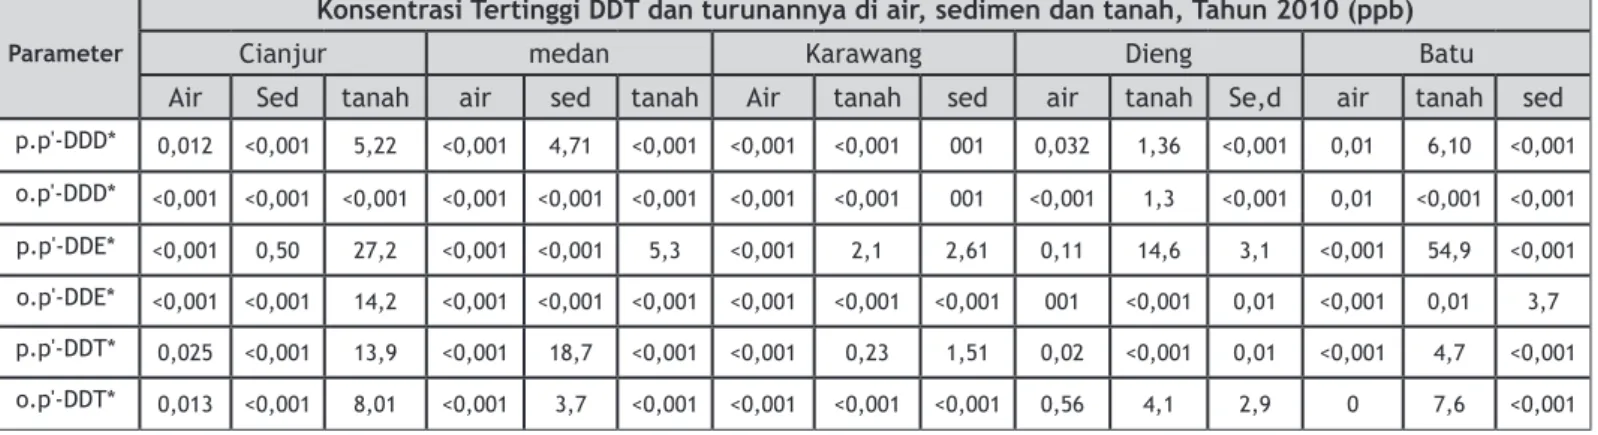 Tabel 2. Konsentrasi DDT dan turunannya di air, sedimen dan tanah, tahun 2010  (PusarpedalKLH,2010)